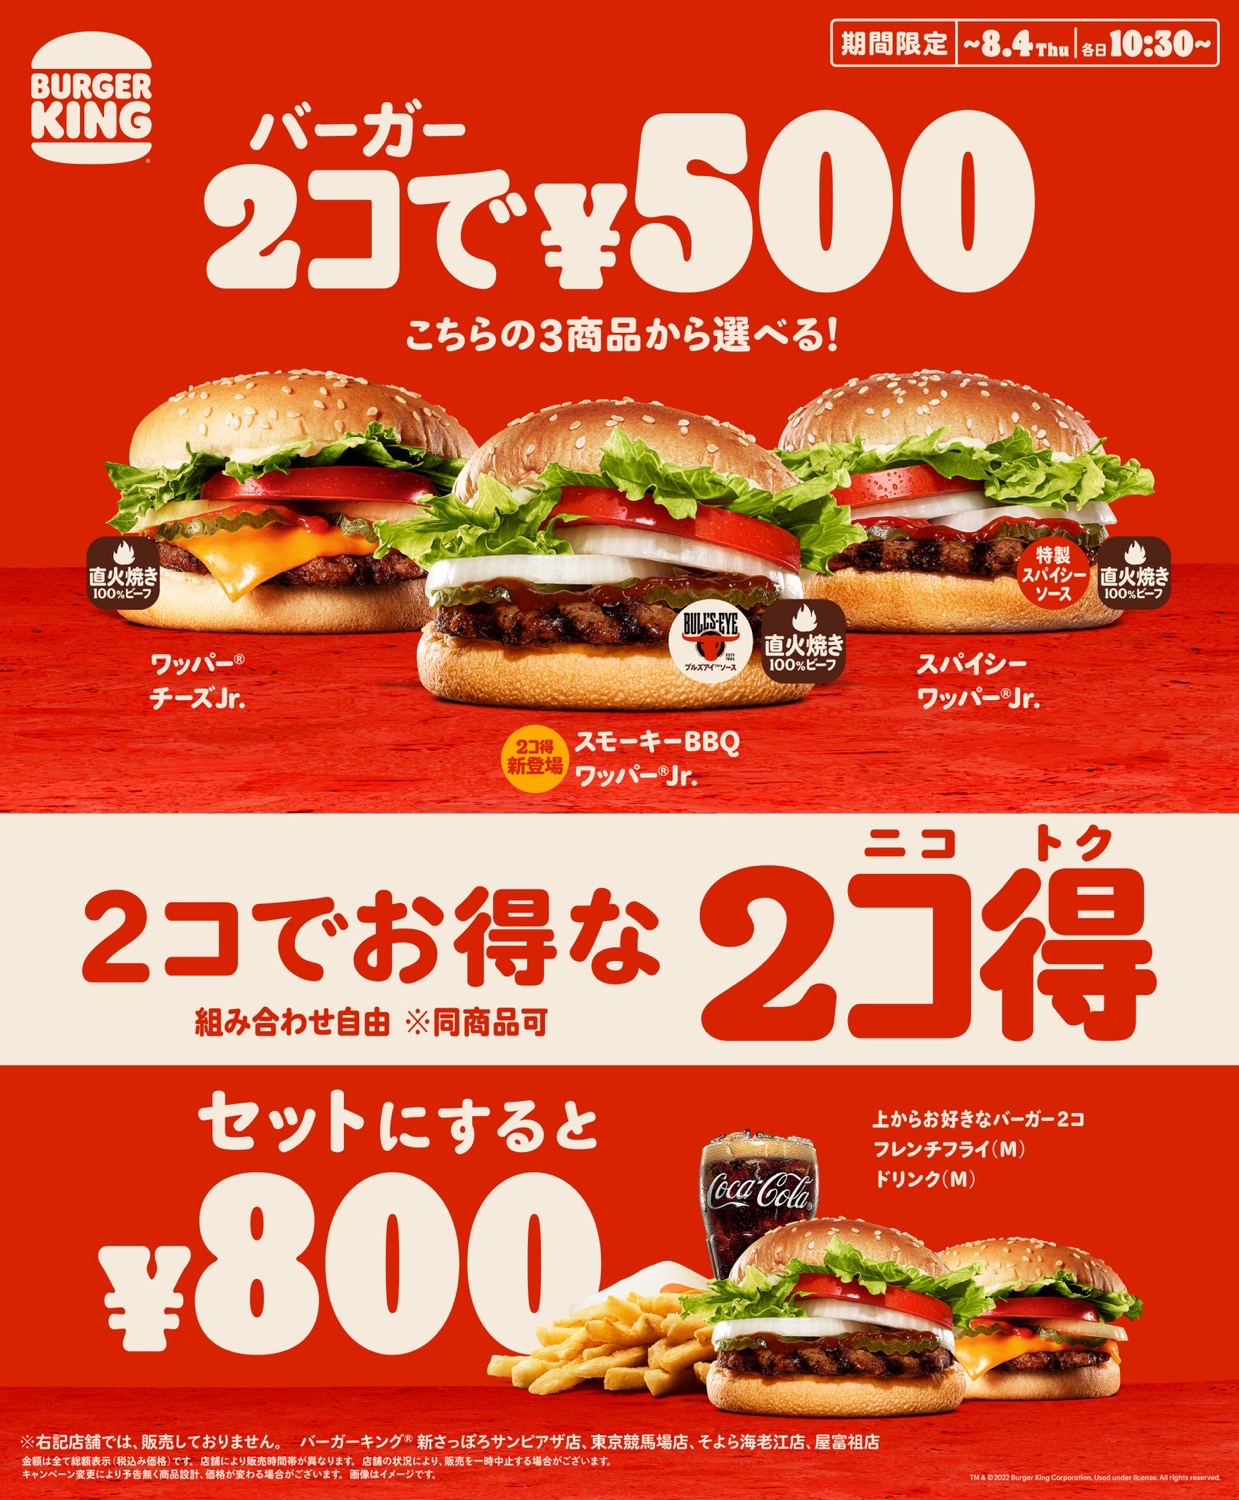 Burger 2kotoku 21000